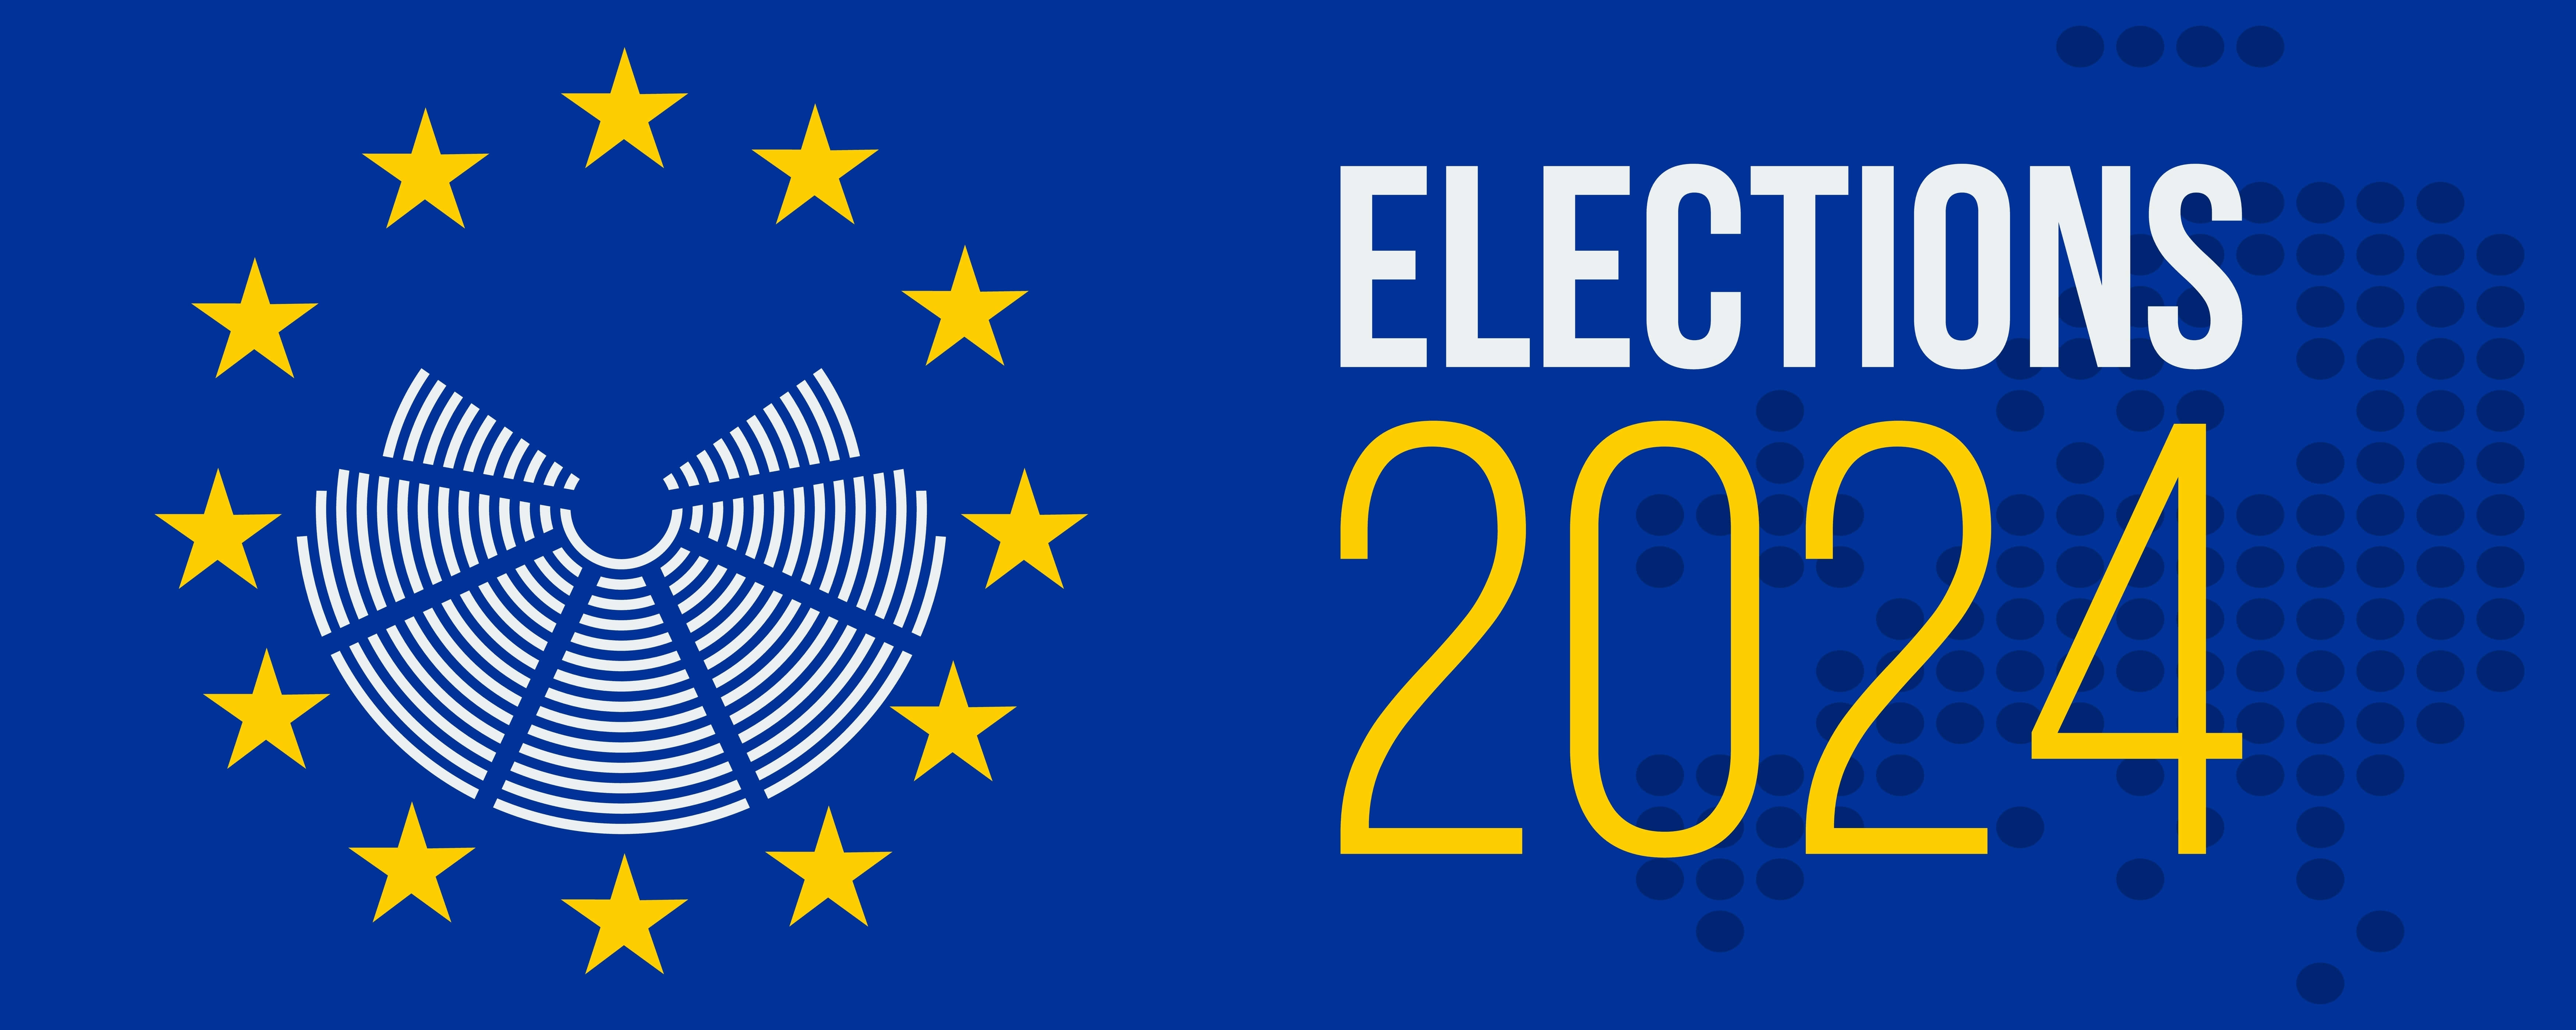 European Elections Plunge the EU into a Political Crisis